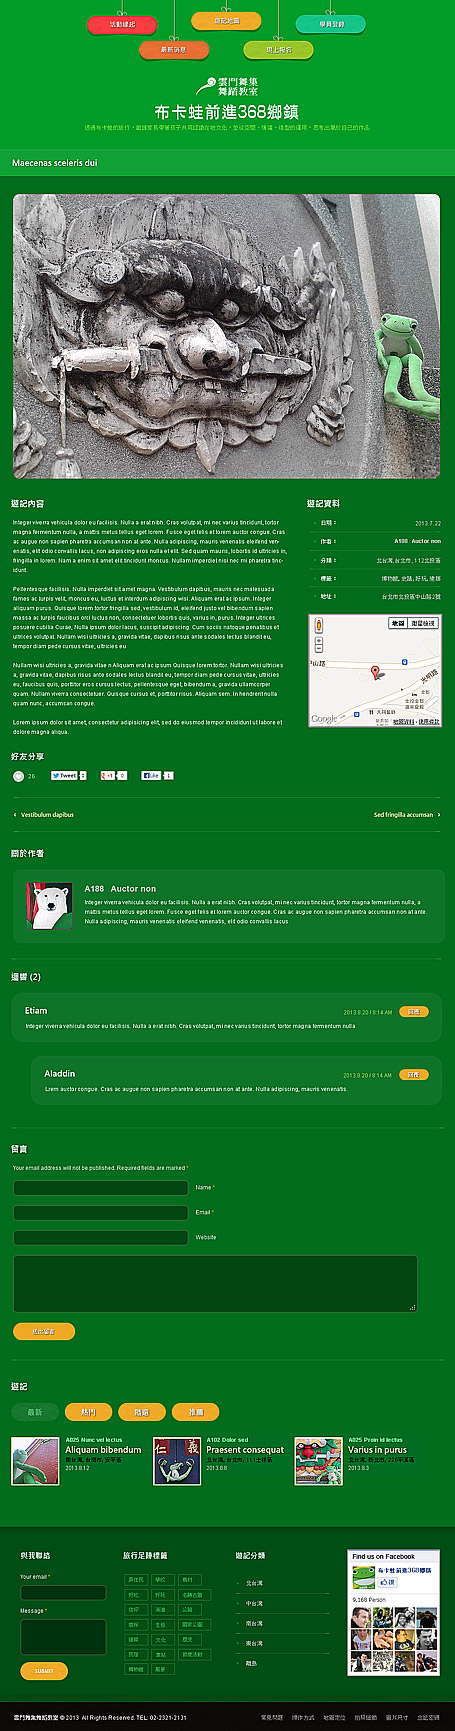 網頁設計 網站規劃 RWD 台北網頁設計公司 雲門舞集舞蹈教室 布卡蛙前進台灣368鄉鎮